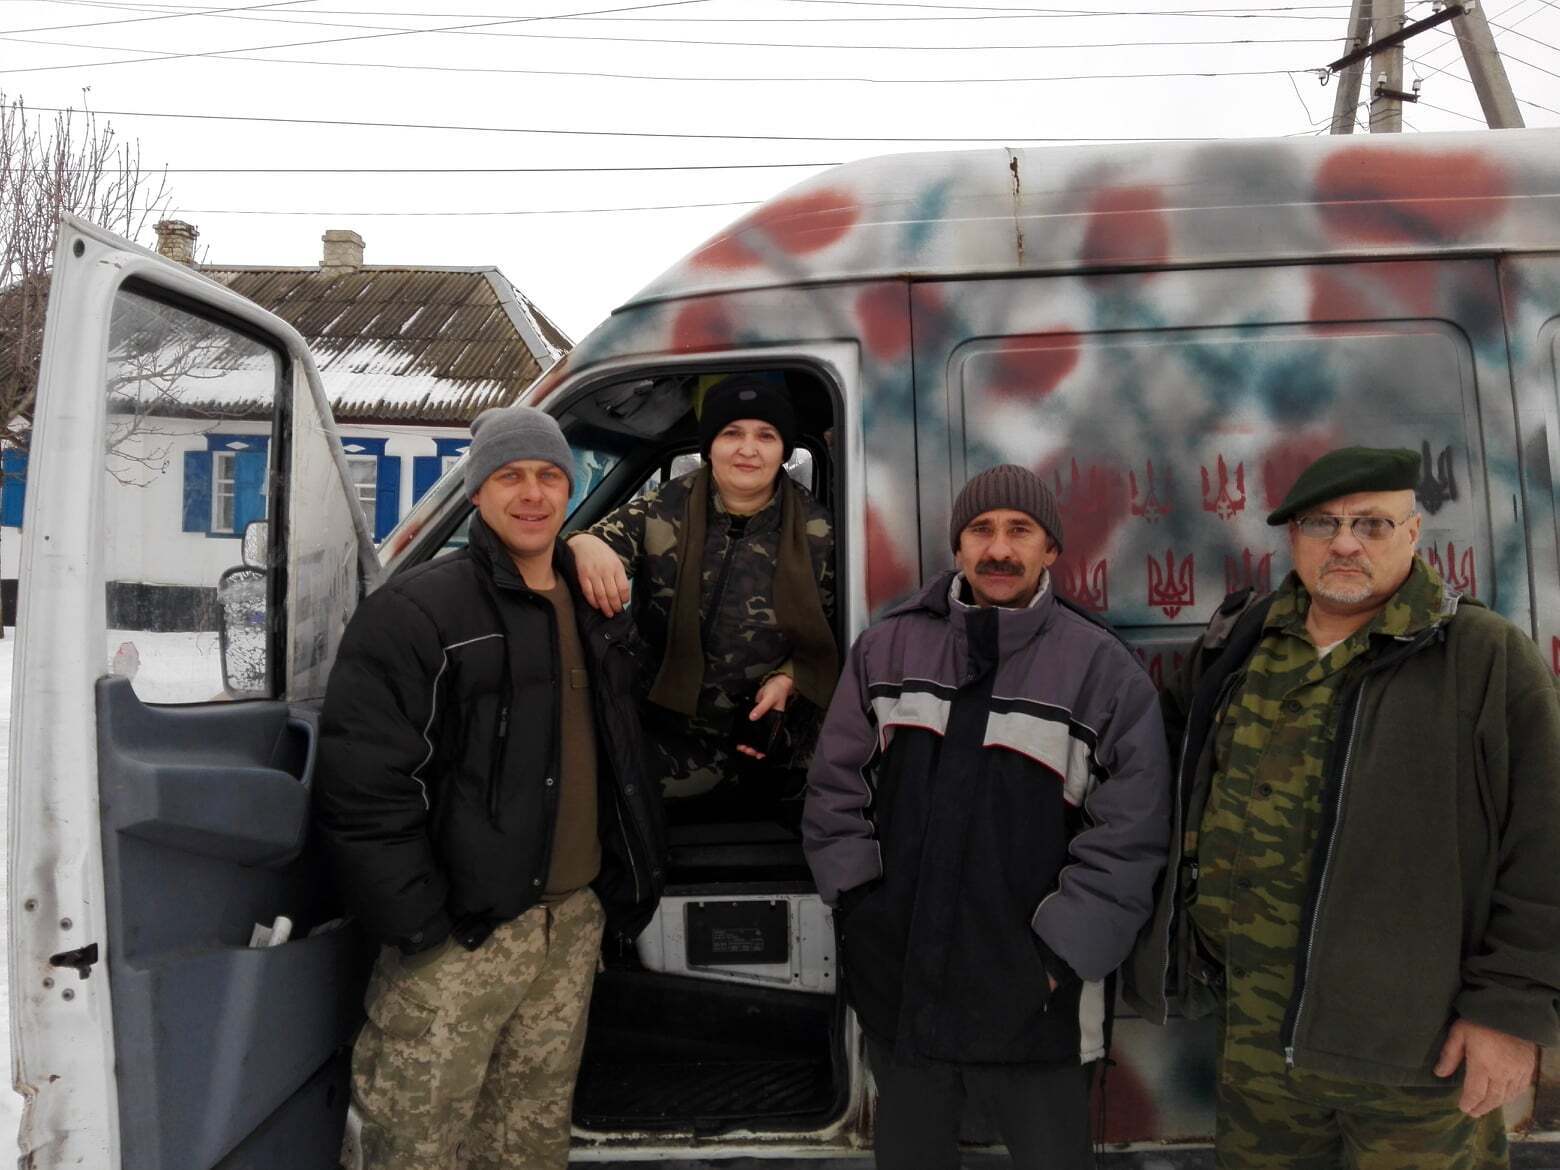 Сергей (крайний слева) на своем бусе исколесил тысячи километров на фронт